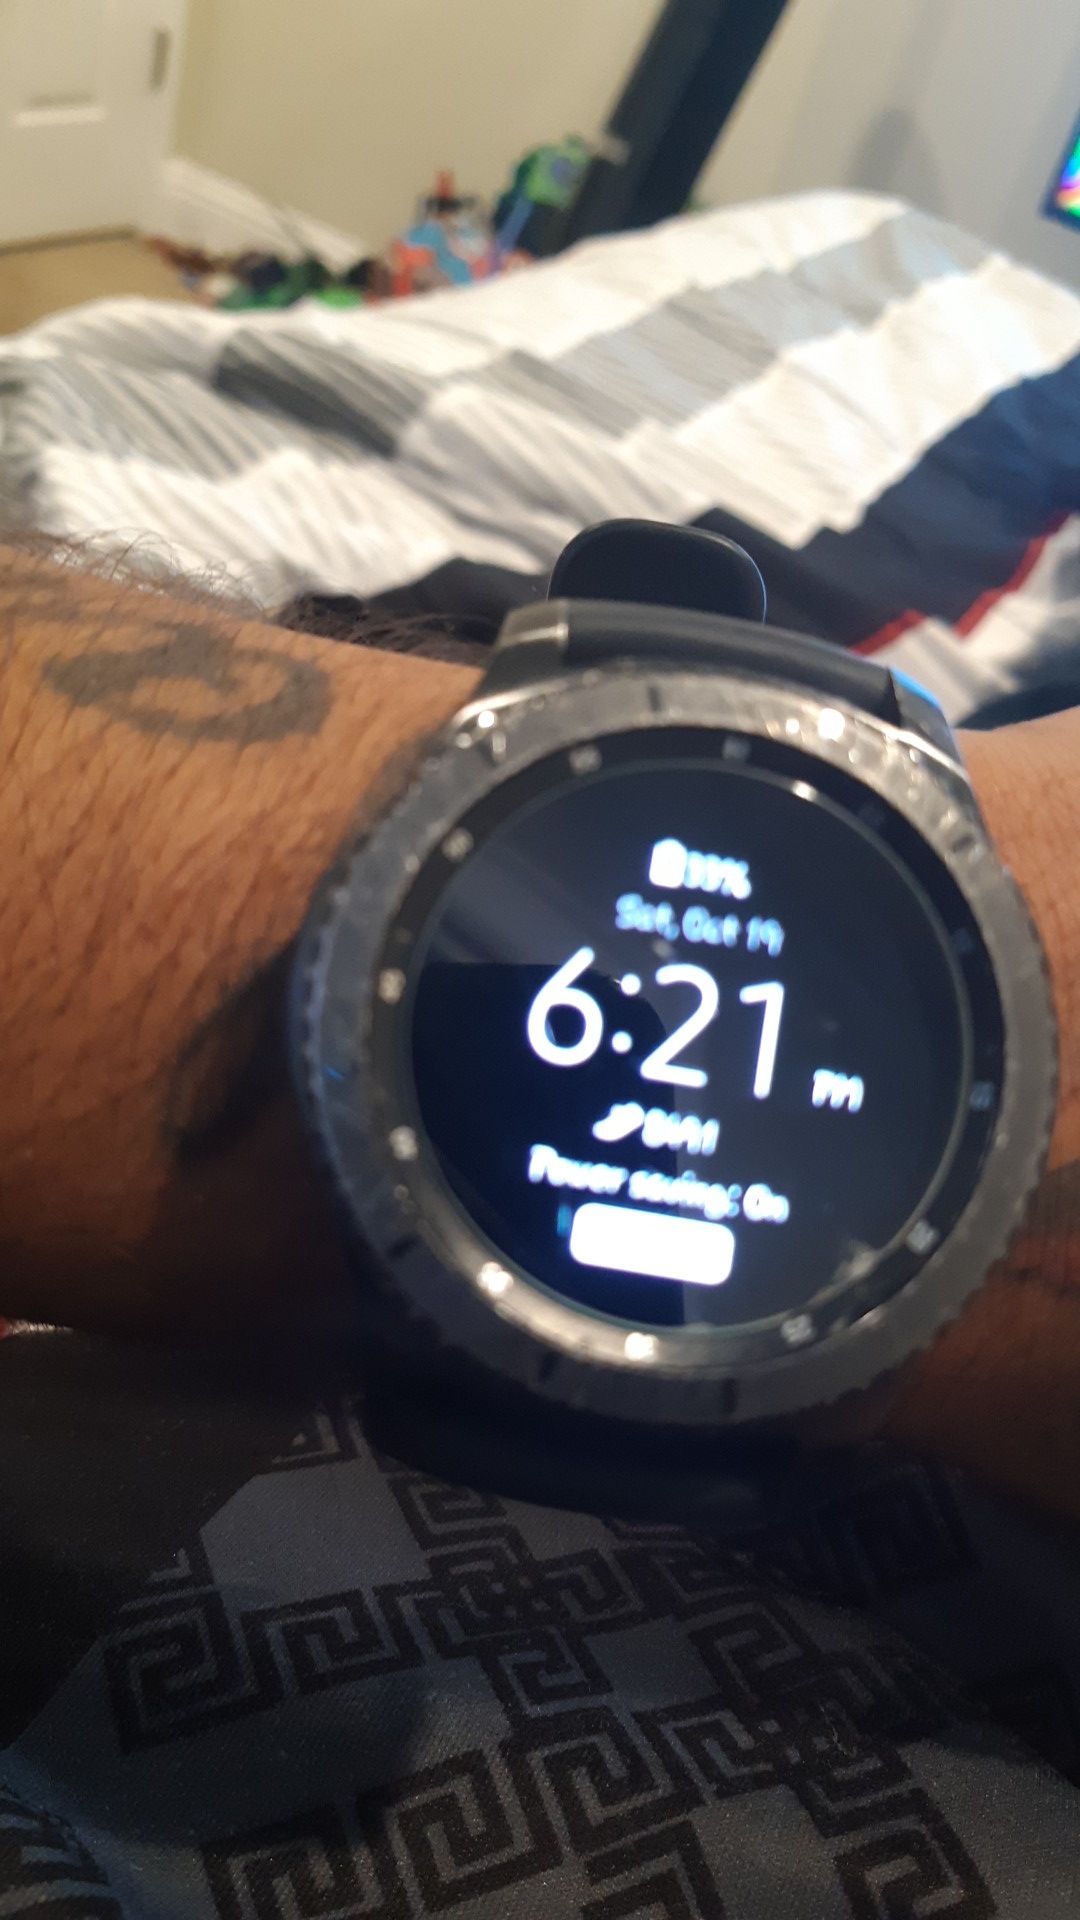 Samsung s3 smart watch